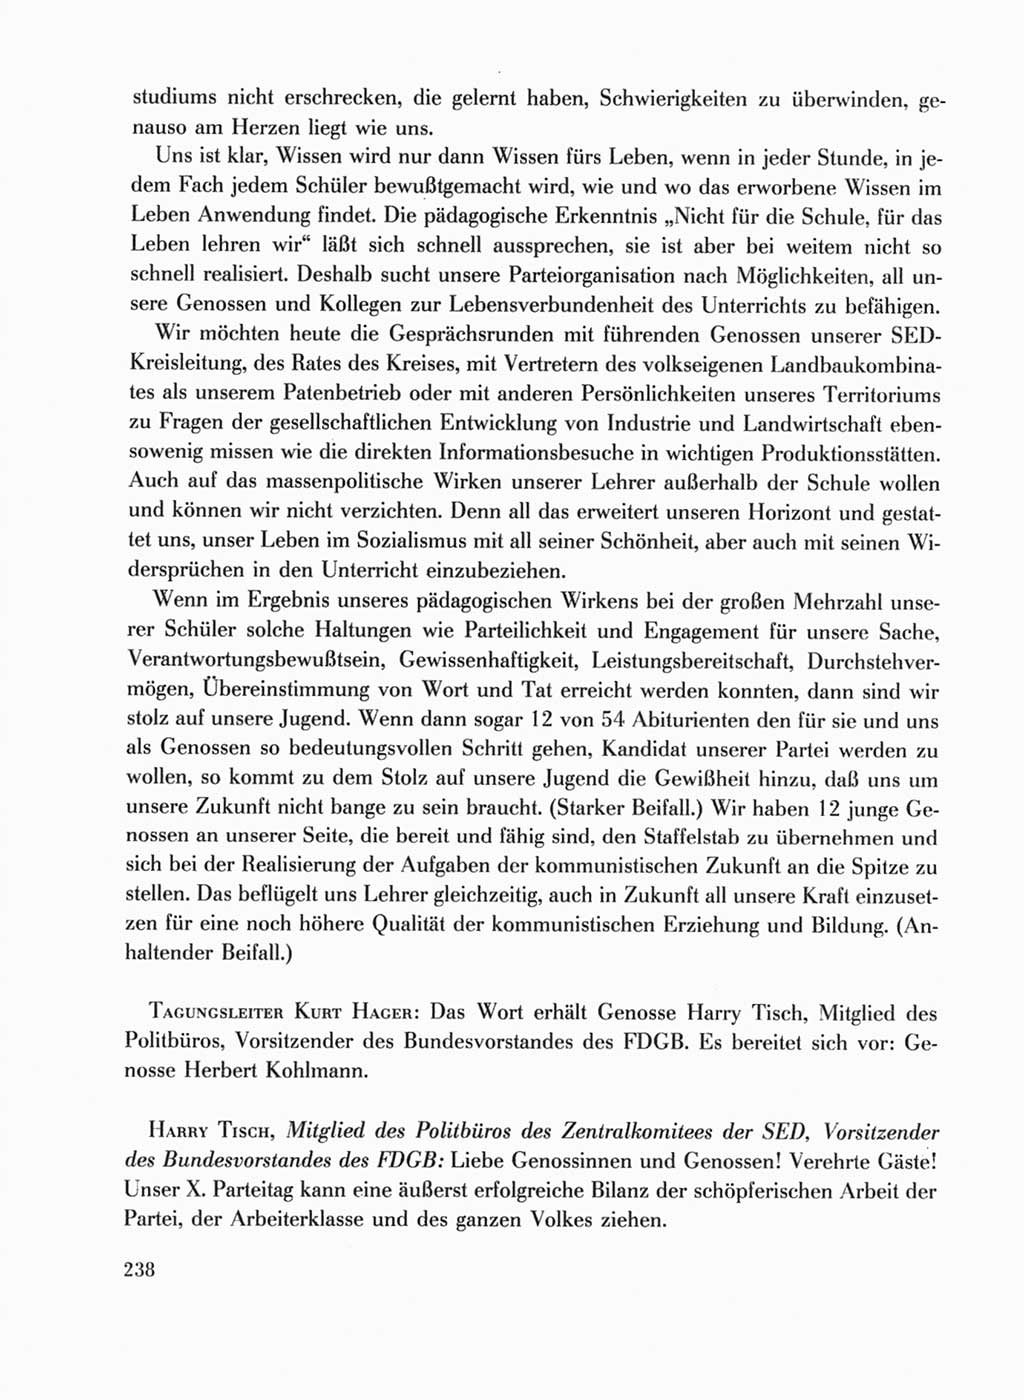 Protokoll der Verhandlungen des Ⅹ. Parteitages der Sozialistischen Einheitspartei Deutschlands (SED) [Deutsche Demokratische Republik (DDR)] 1981, Band 1, Seite 238 (Prot. Verh. Ⅹ. PT SED DDR 1981, Bd. 1, S. 238)